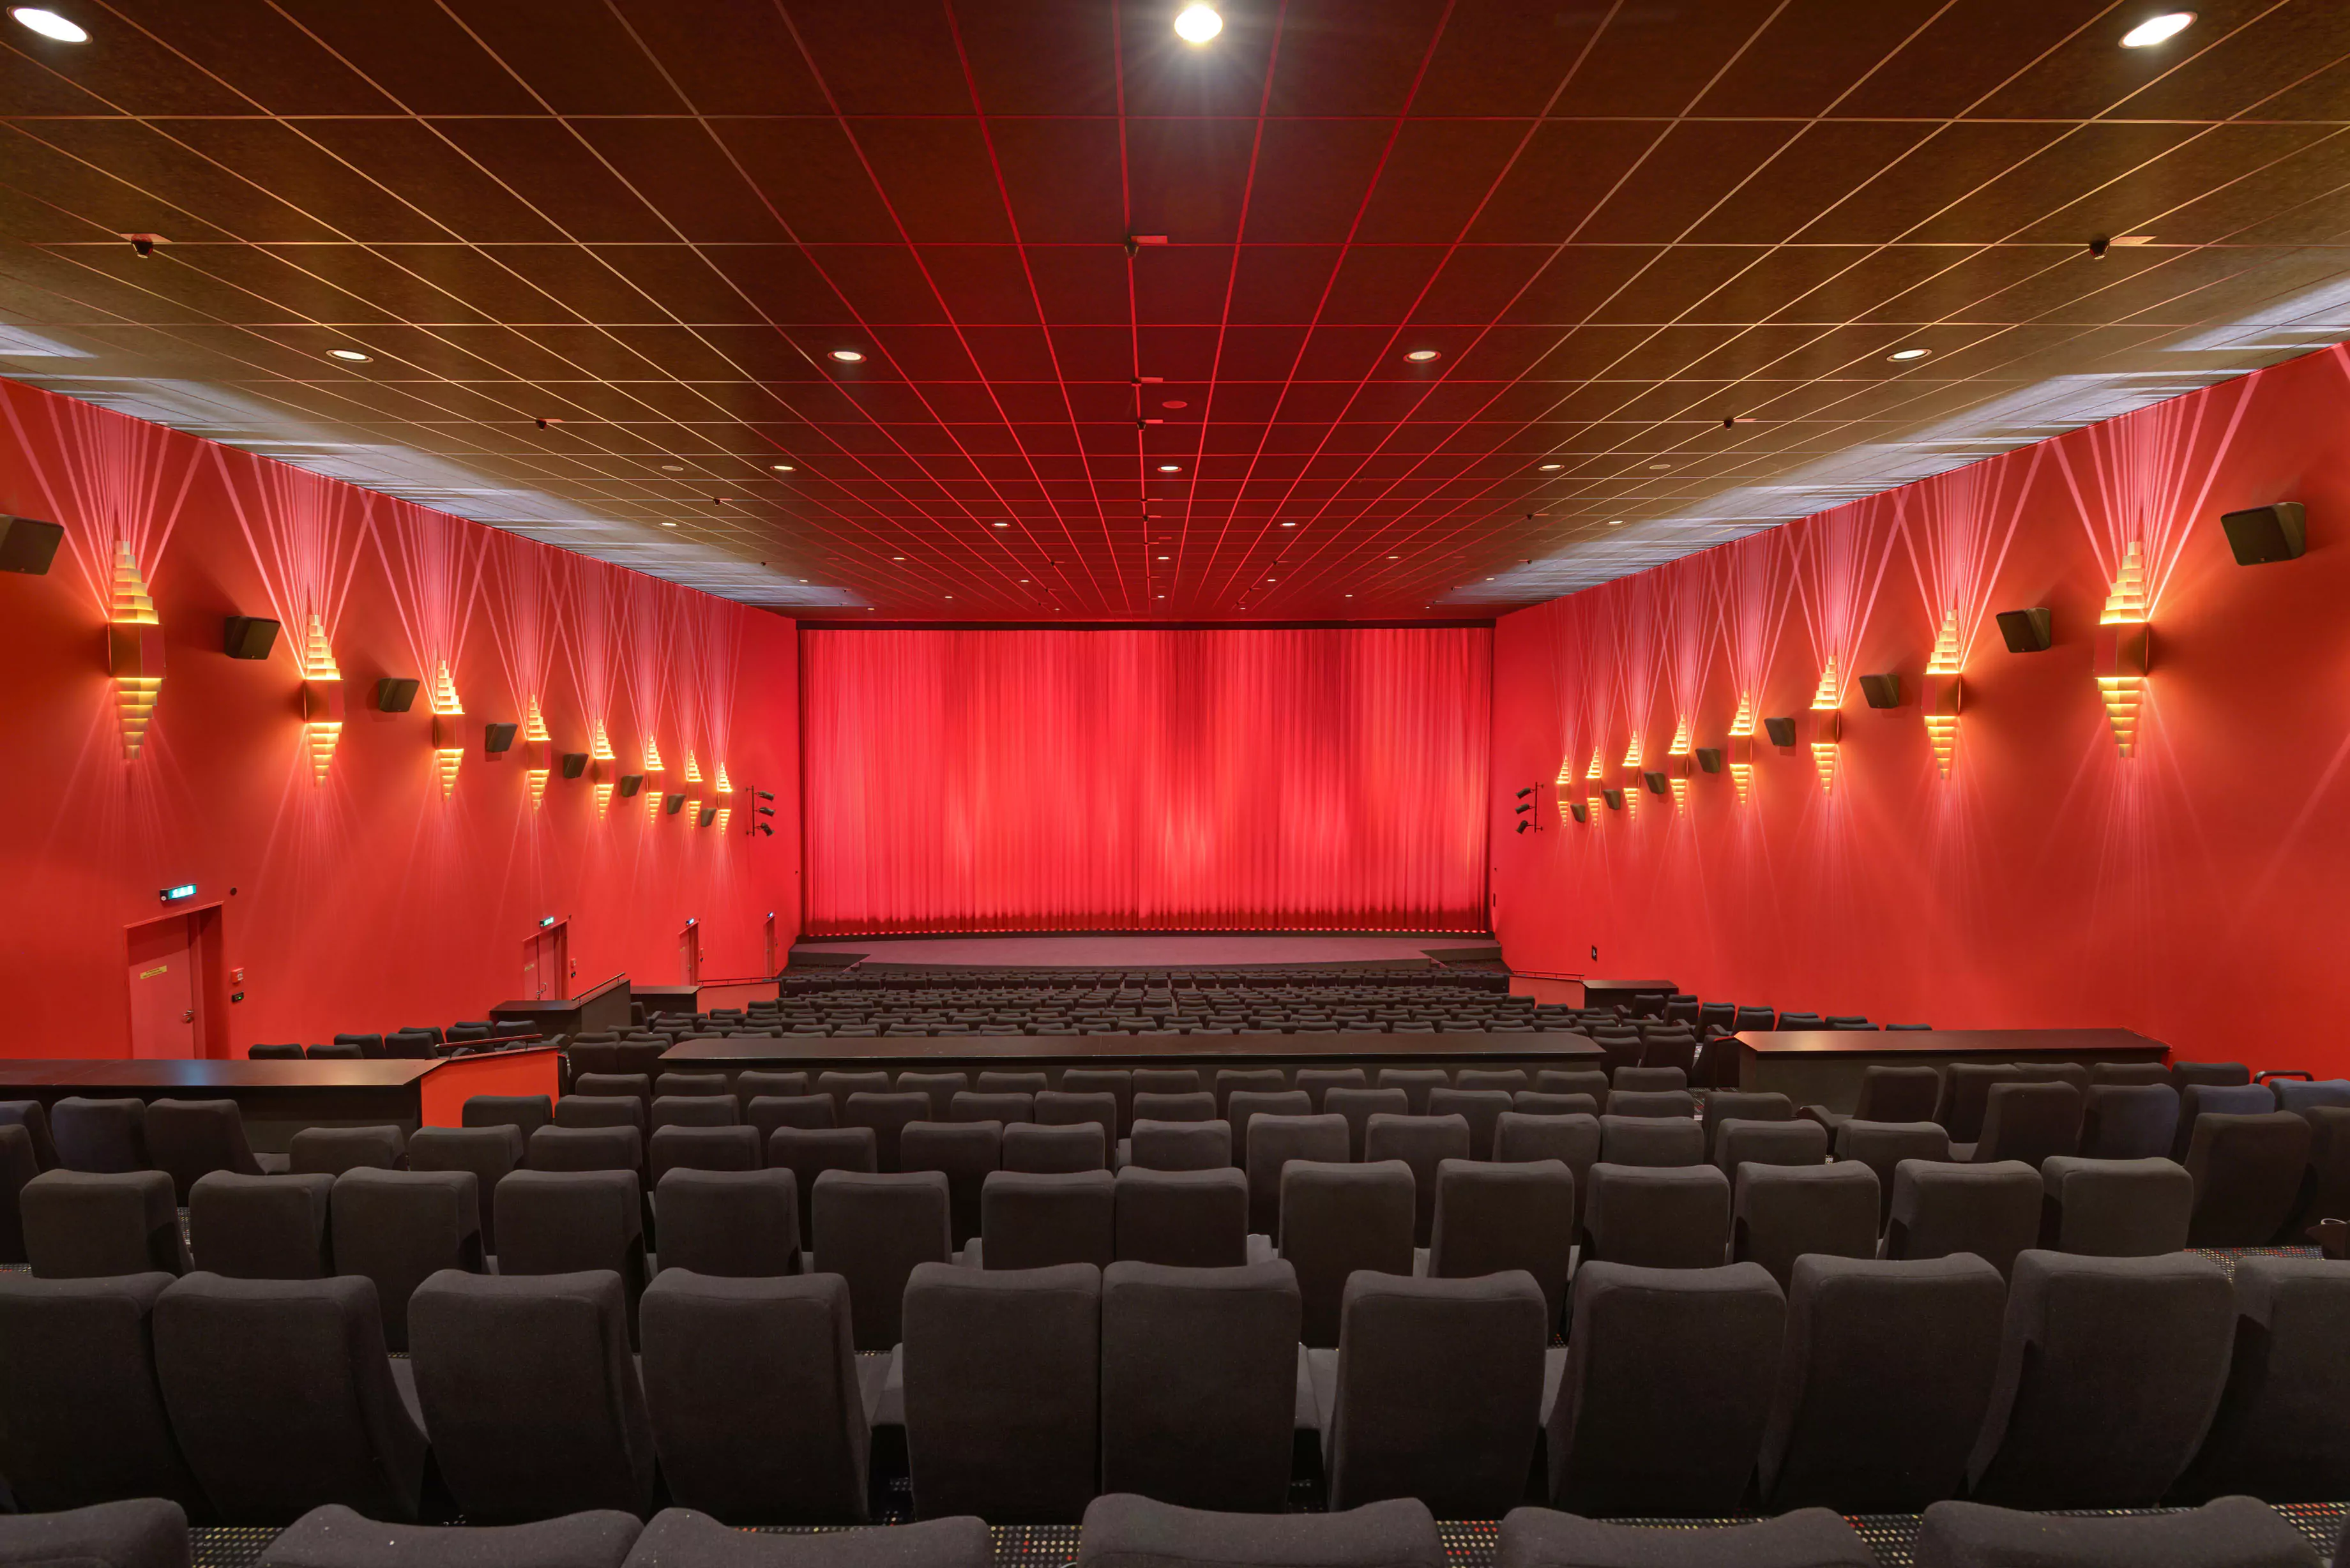 Manufacturing European Standard Cinema Seats Image